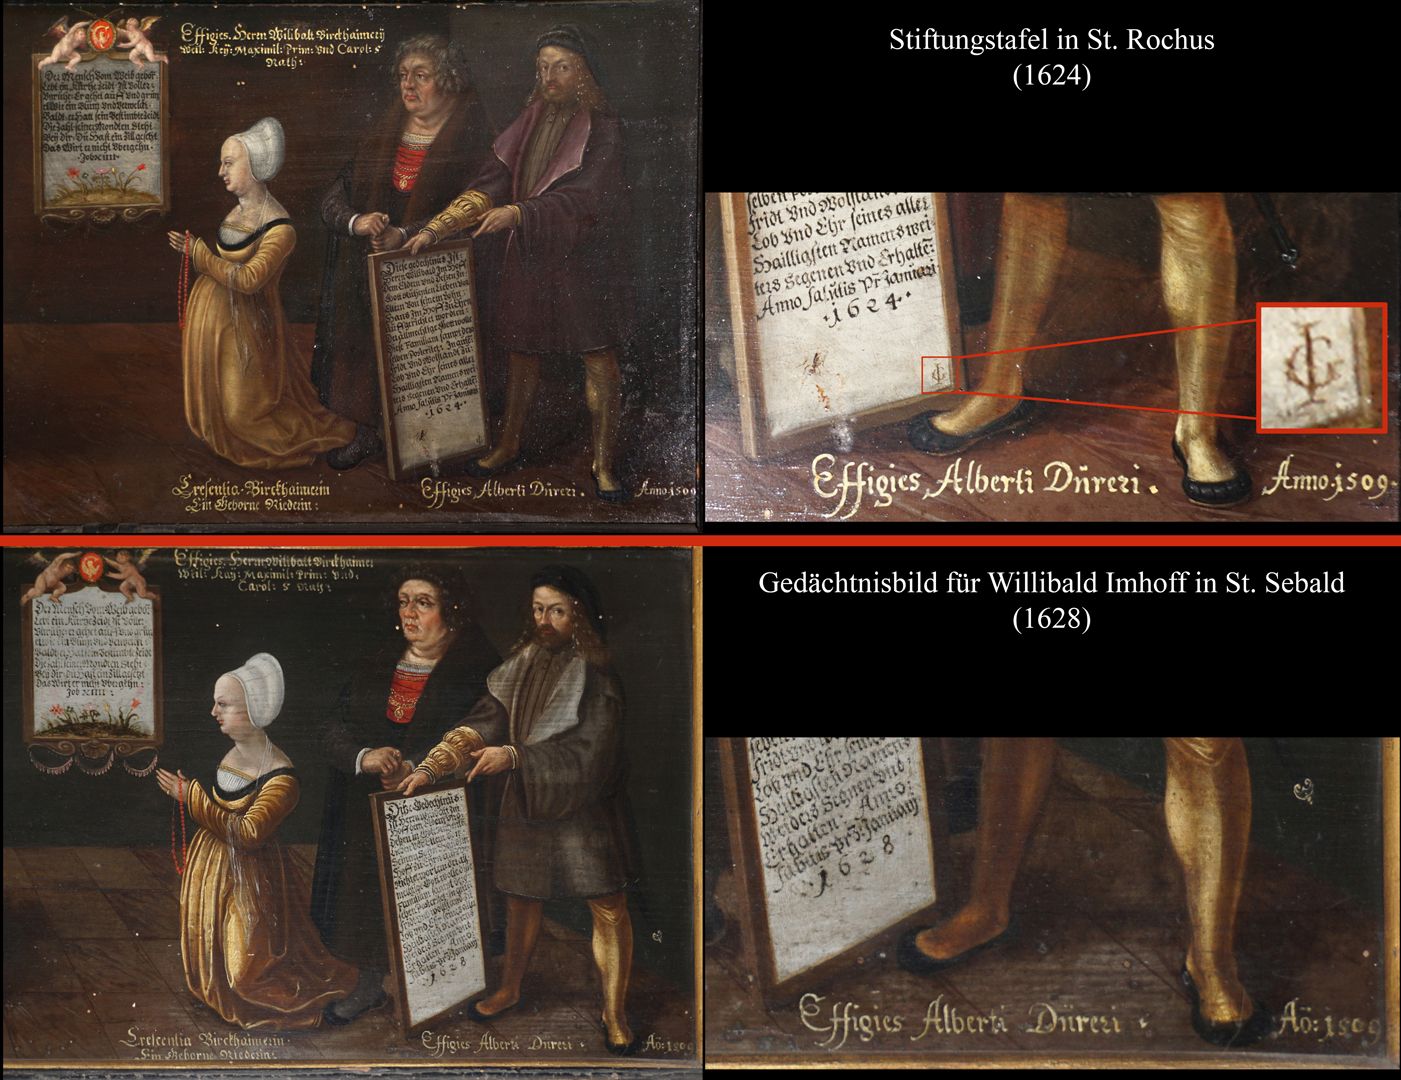 Dürersche Stiftungstafel Bildvergleich mit Gedächtnistafel für Willibald Imhoff in St. Sebald / Detail mit Künstlersignatur J.G. = Joerg (Georg) Gärtner